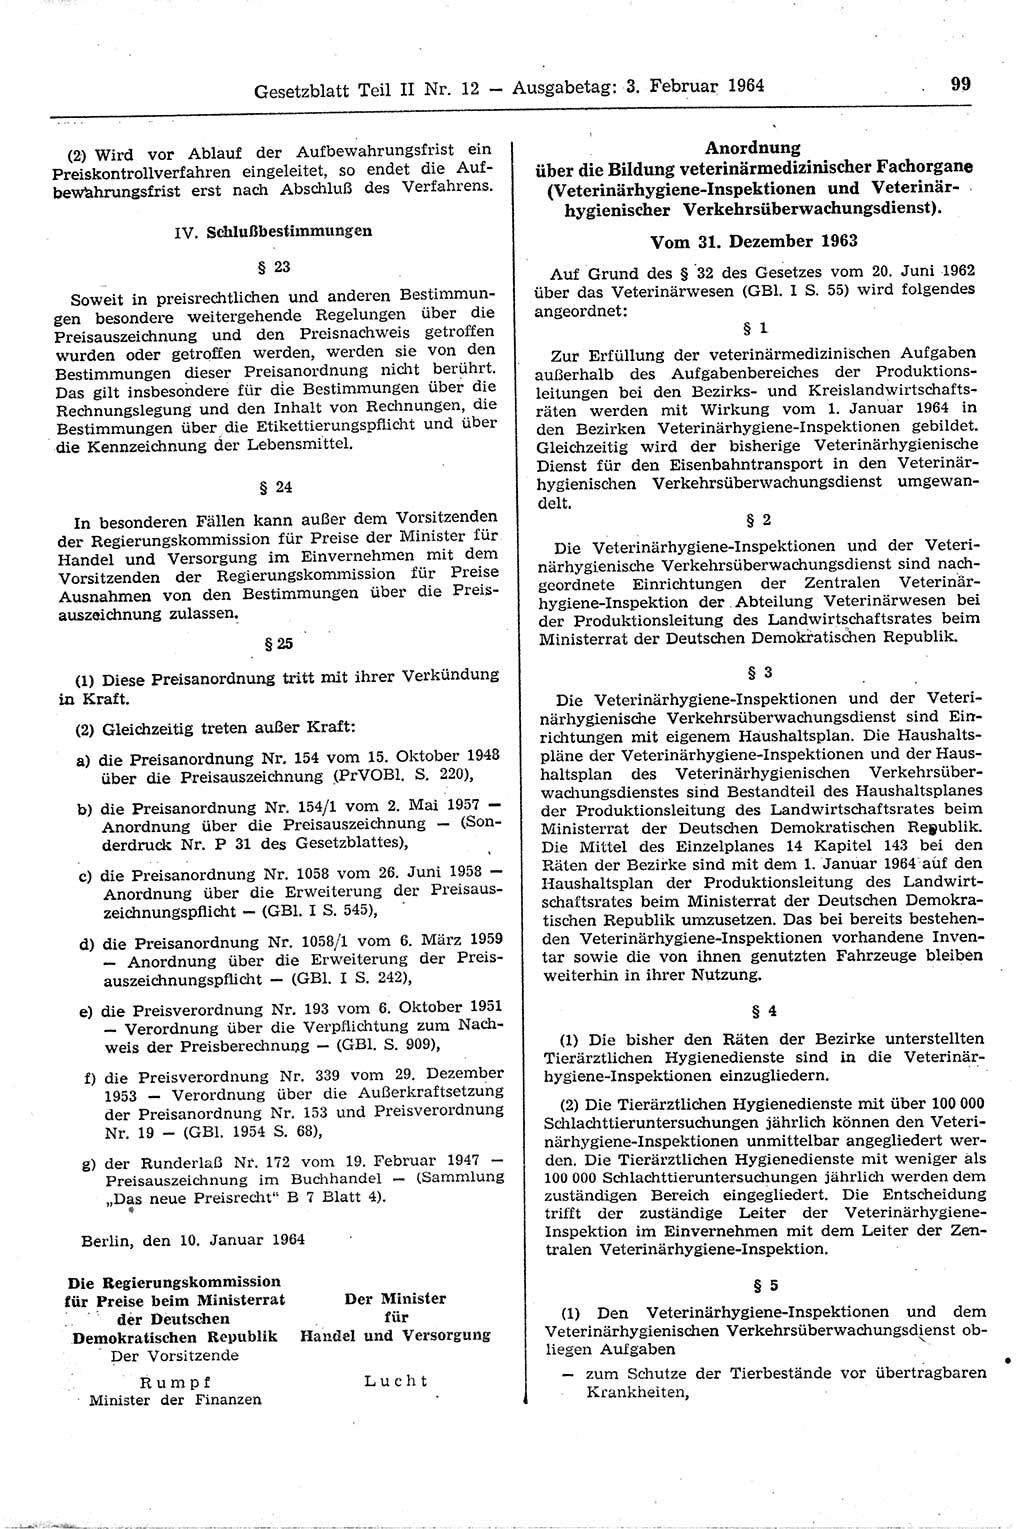 Gesetzblatt (GBl.) der Deutschen Demokratischen Republik (DDR) Teil ⅠⅠ 1964, Seite 99 (GBl. DDR ⅠⅠ 1964, S. 99)